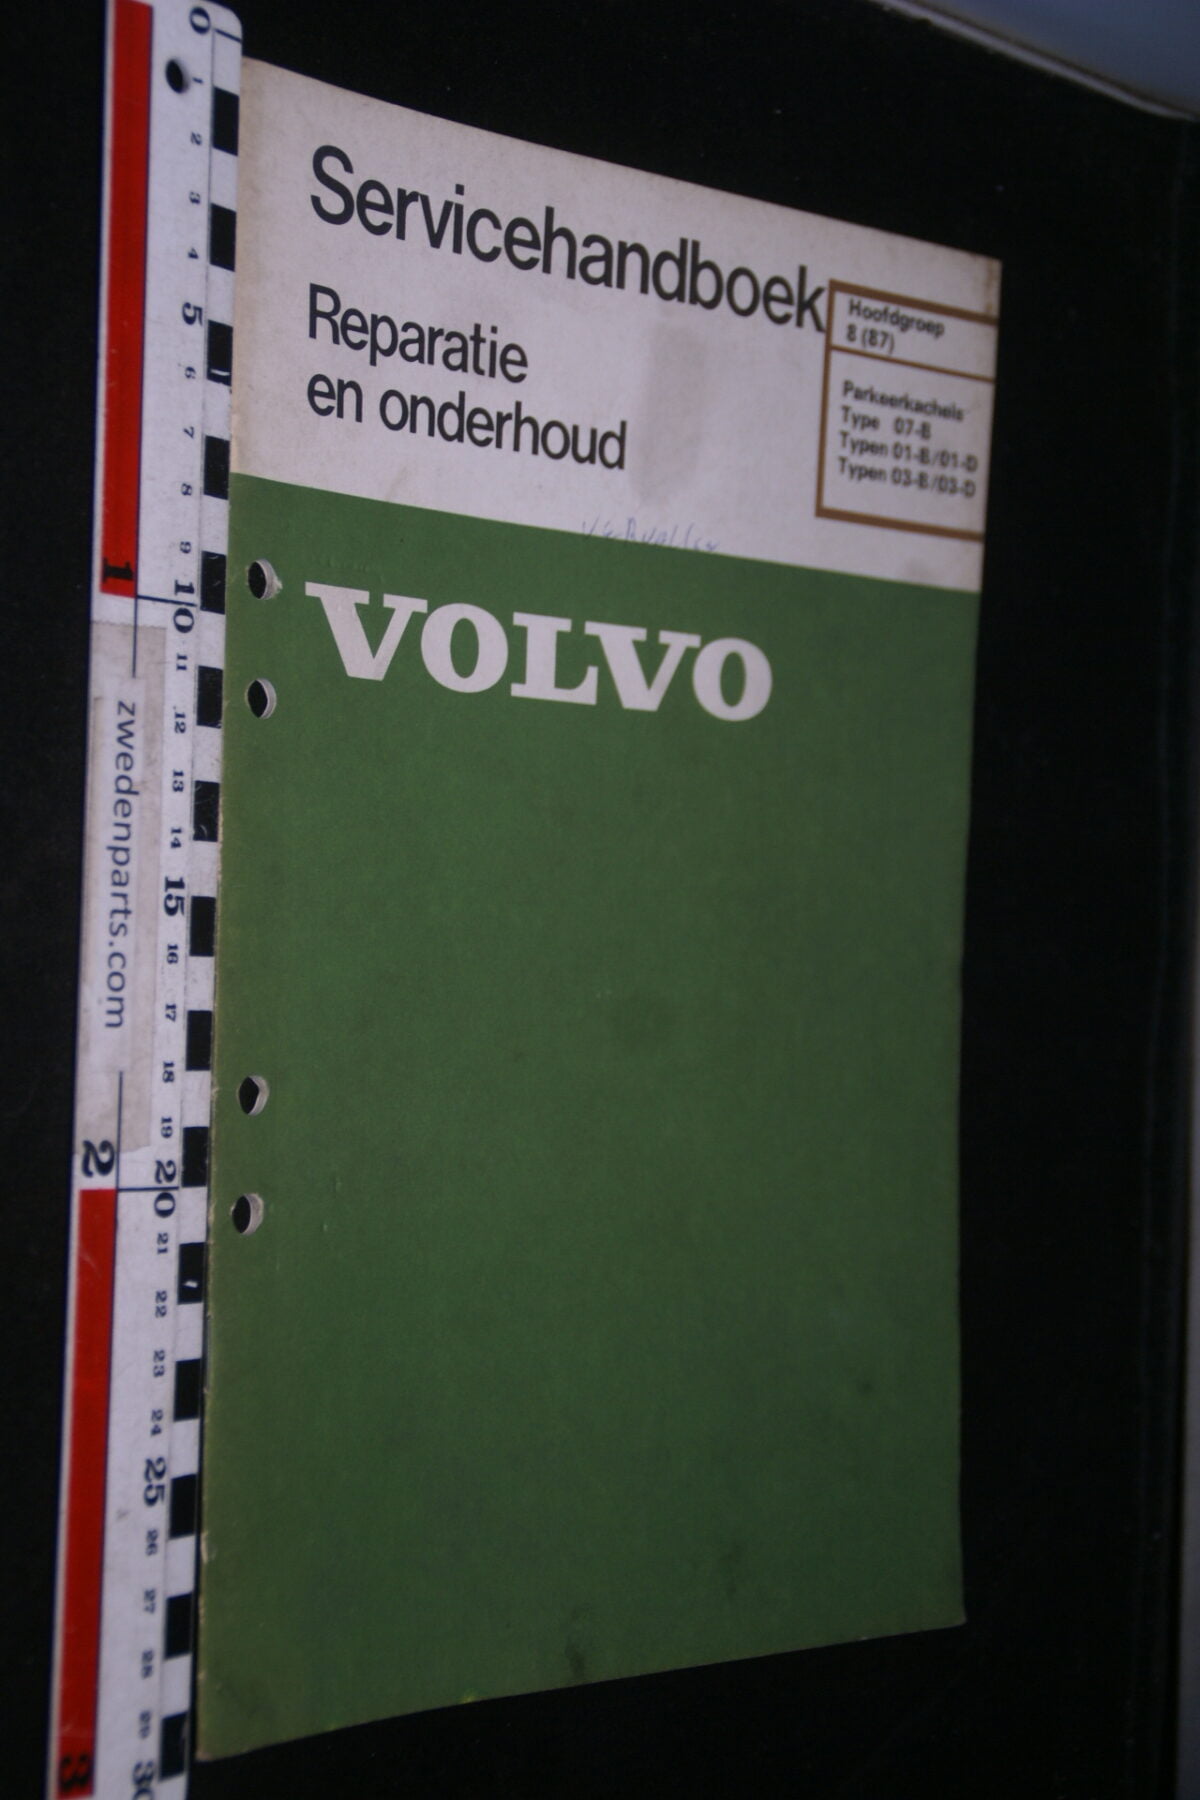 DSC02824 1980 origineel werkplaatsboek 8(87) Volvo parkeerkachel, 1 van 800, nr TP 30207-1-fc9fec0c